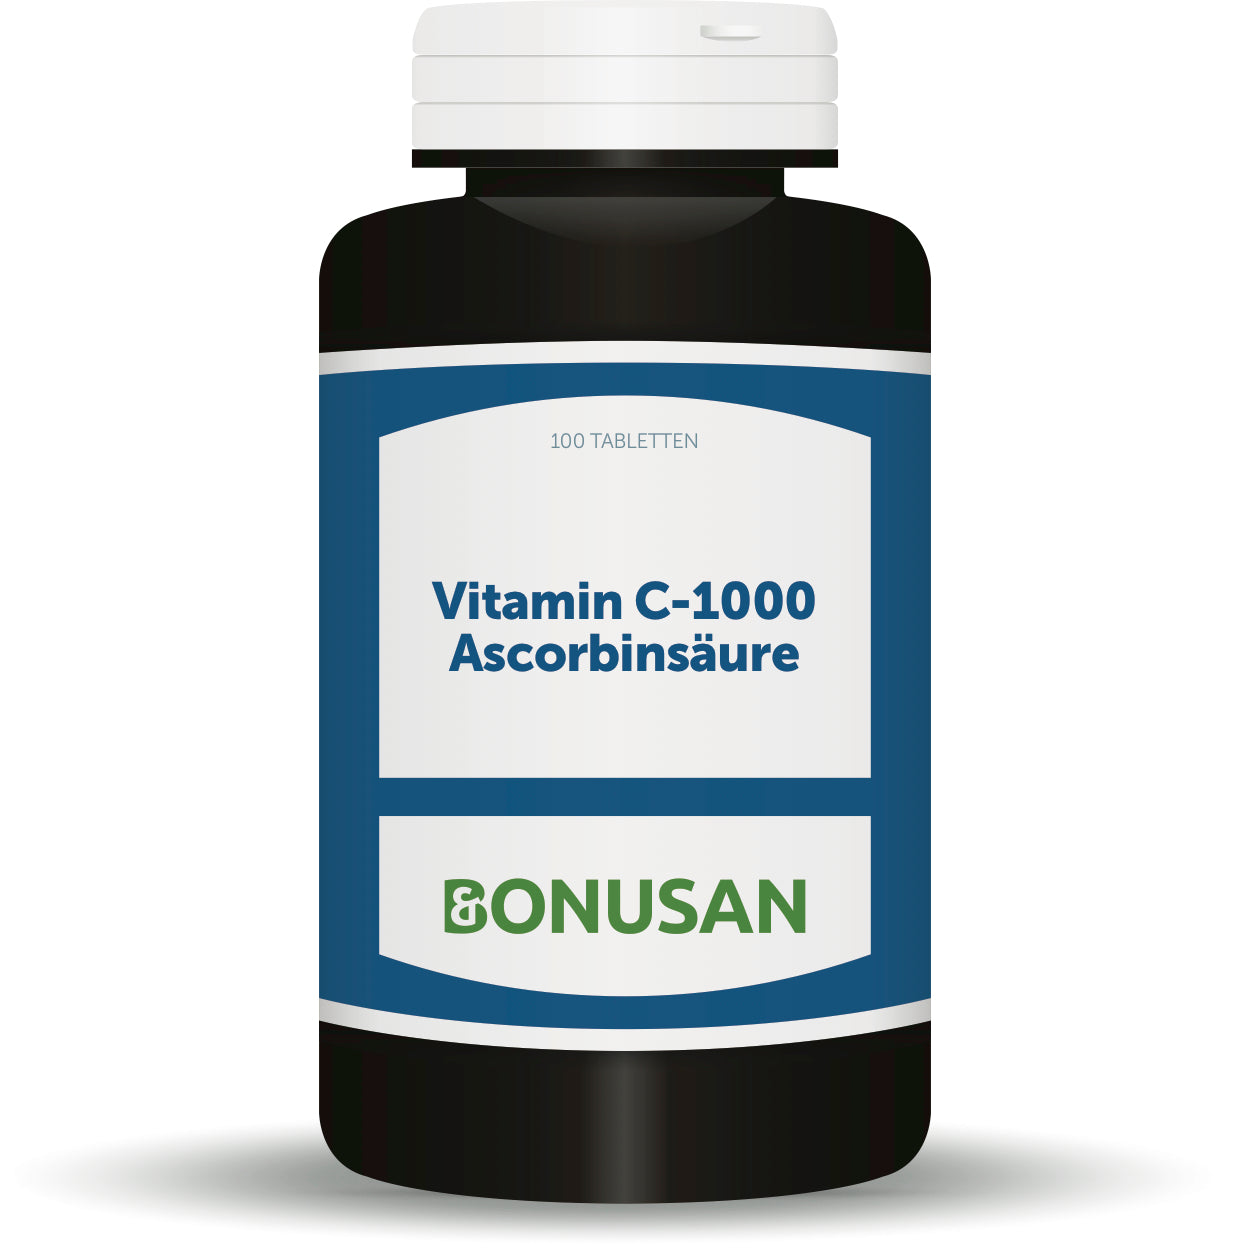 Vitamin C-1000 Ascorbinsäure